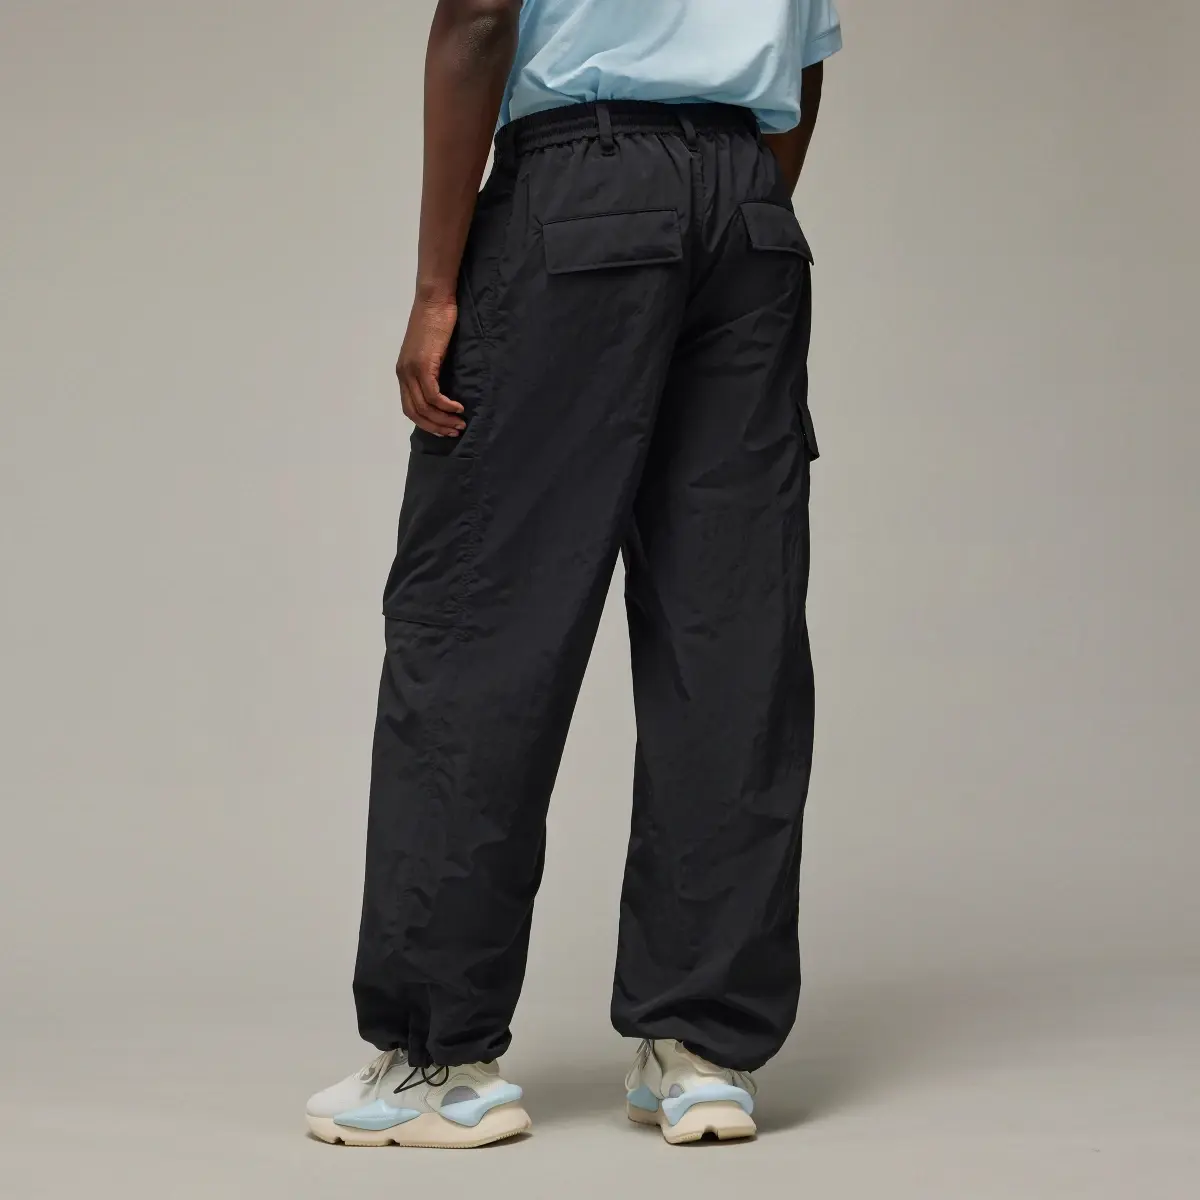 Adidas Spodnie Y-3 Crinkle Nylon. 3